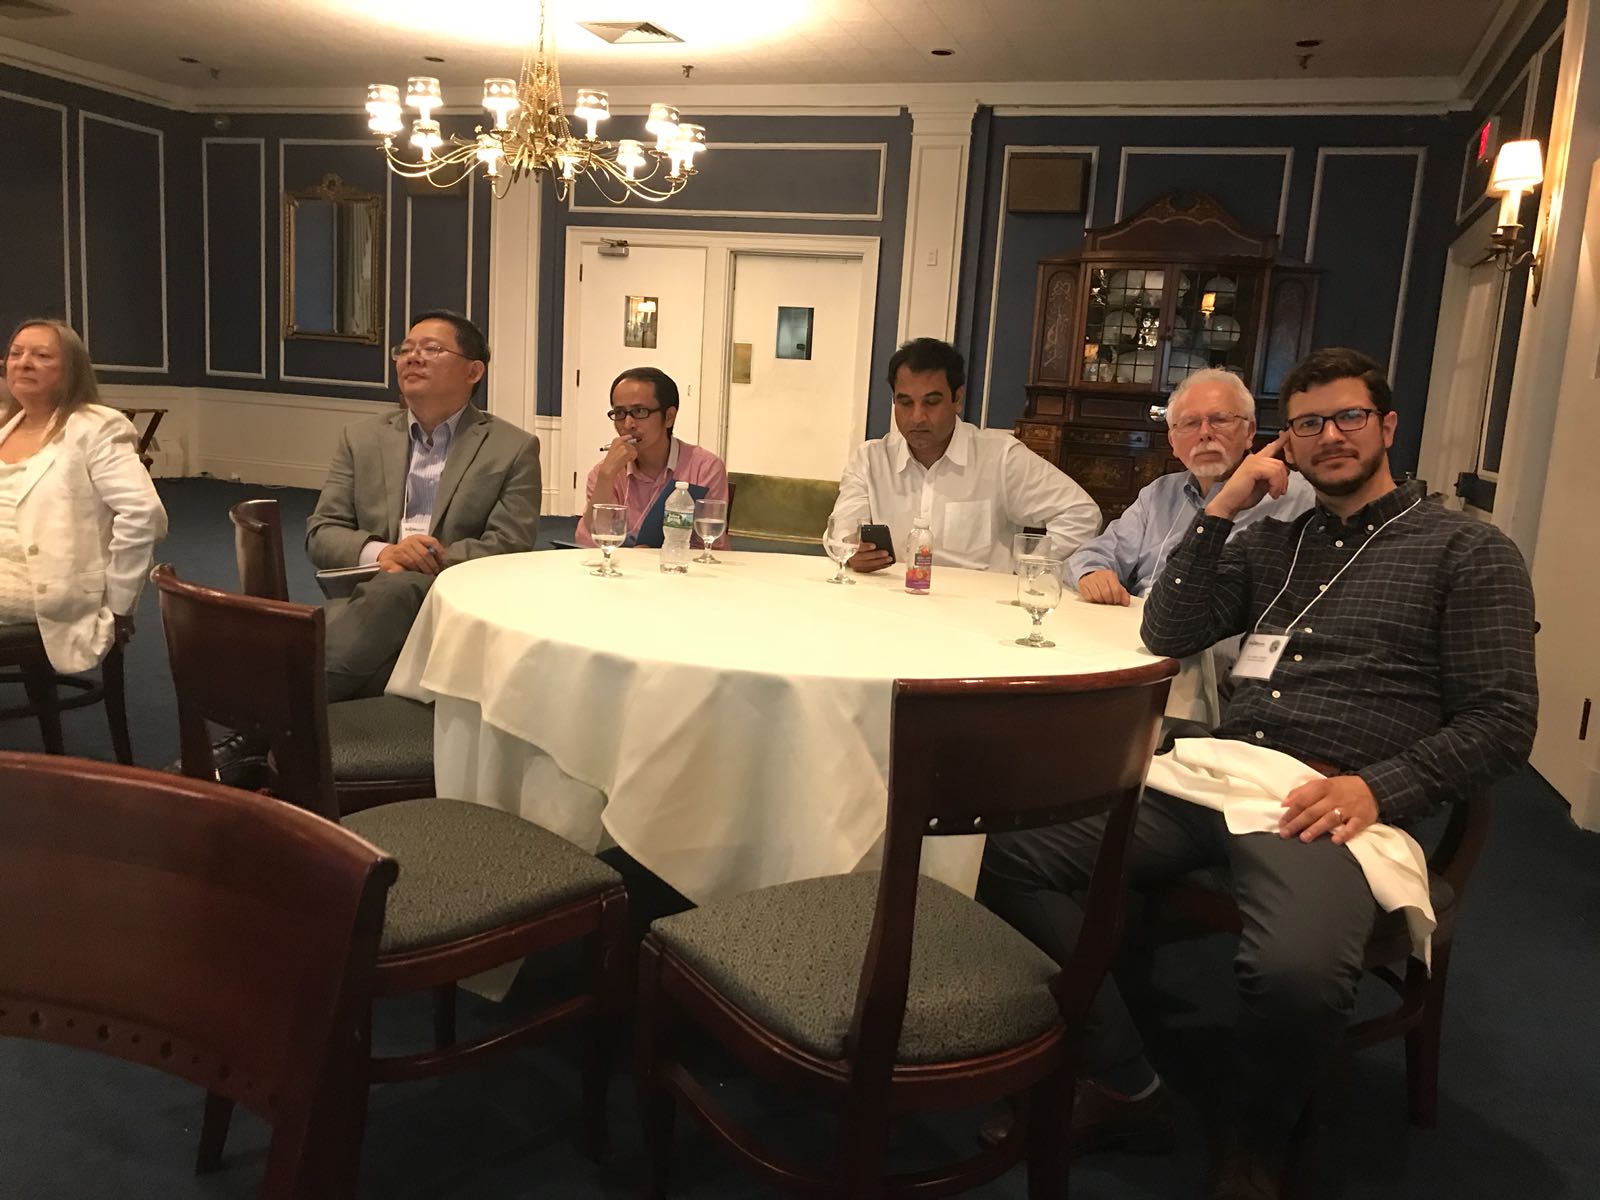 12th Annual Botulinum Research Symposium, August 15-17, 2018